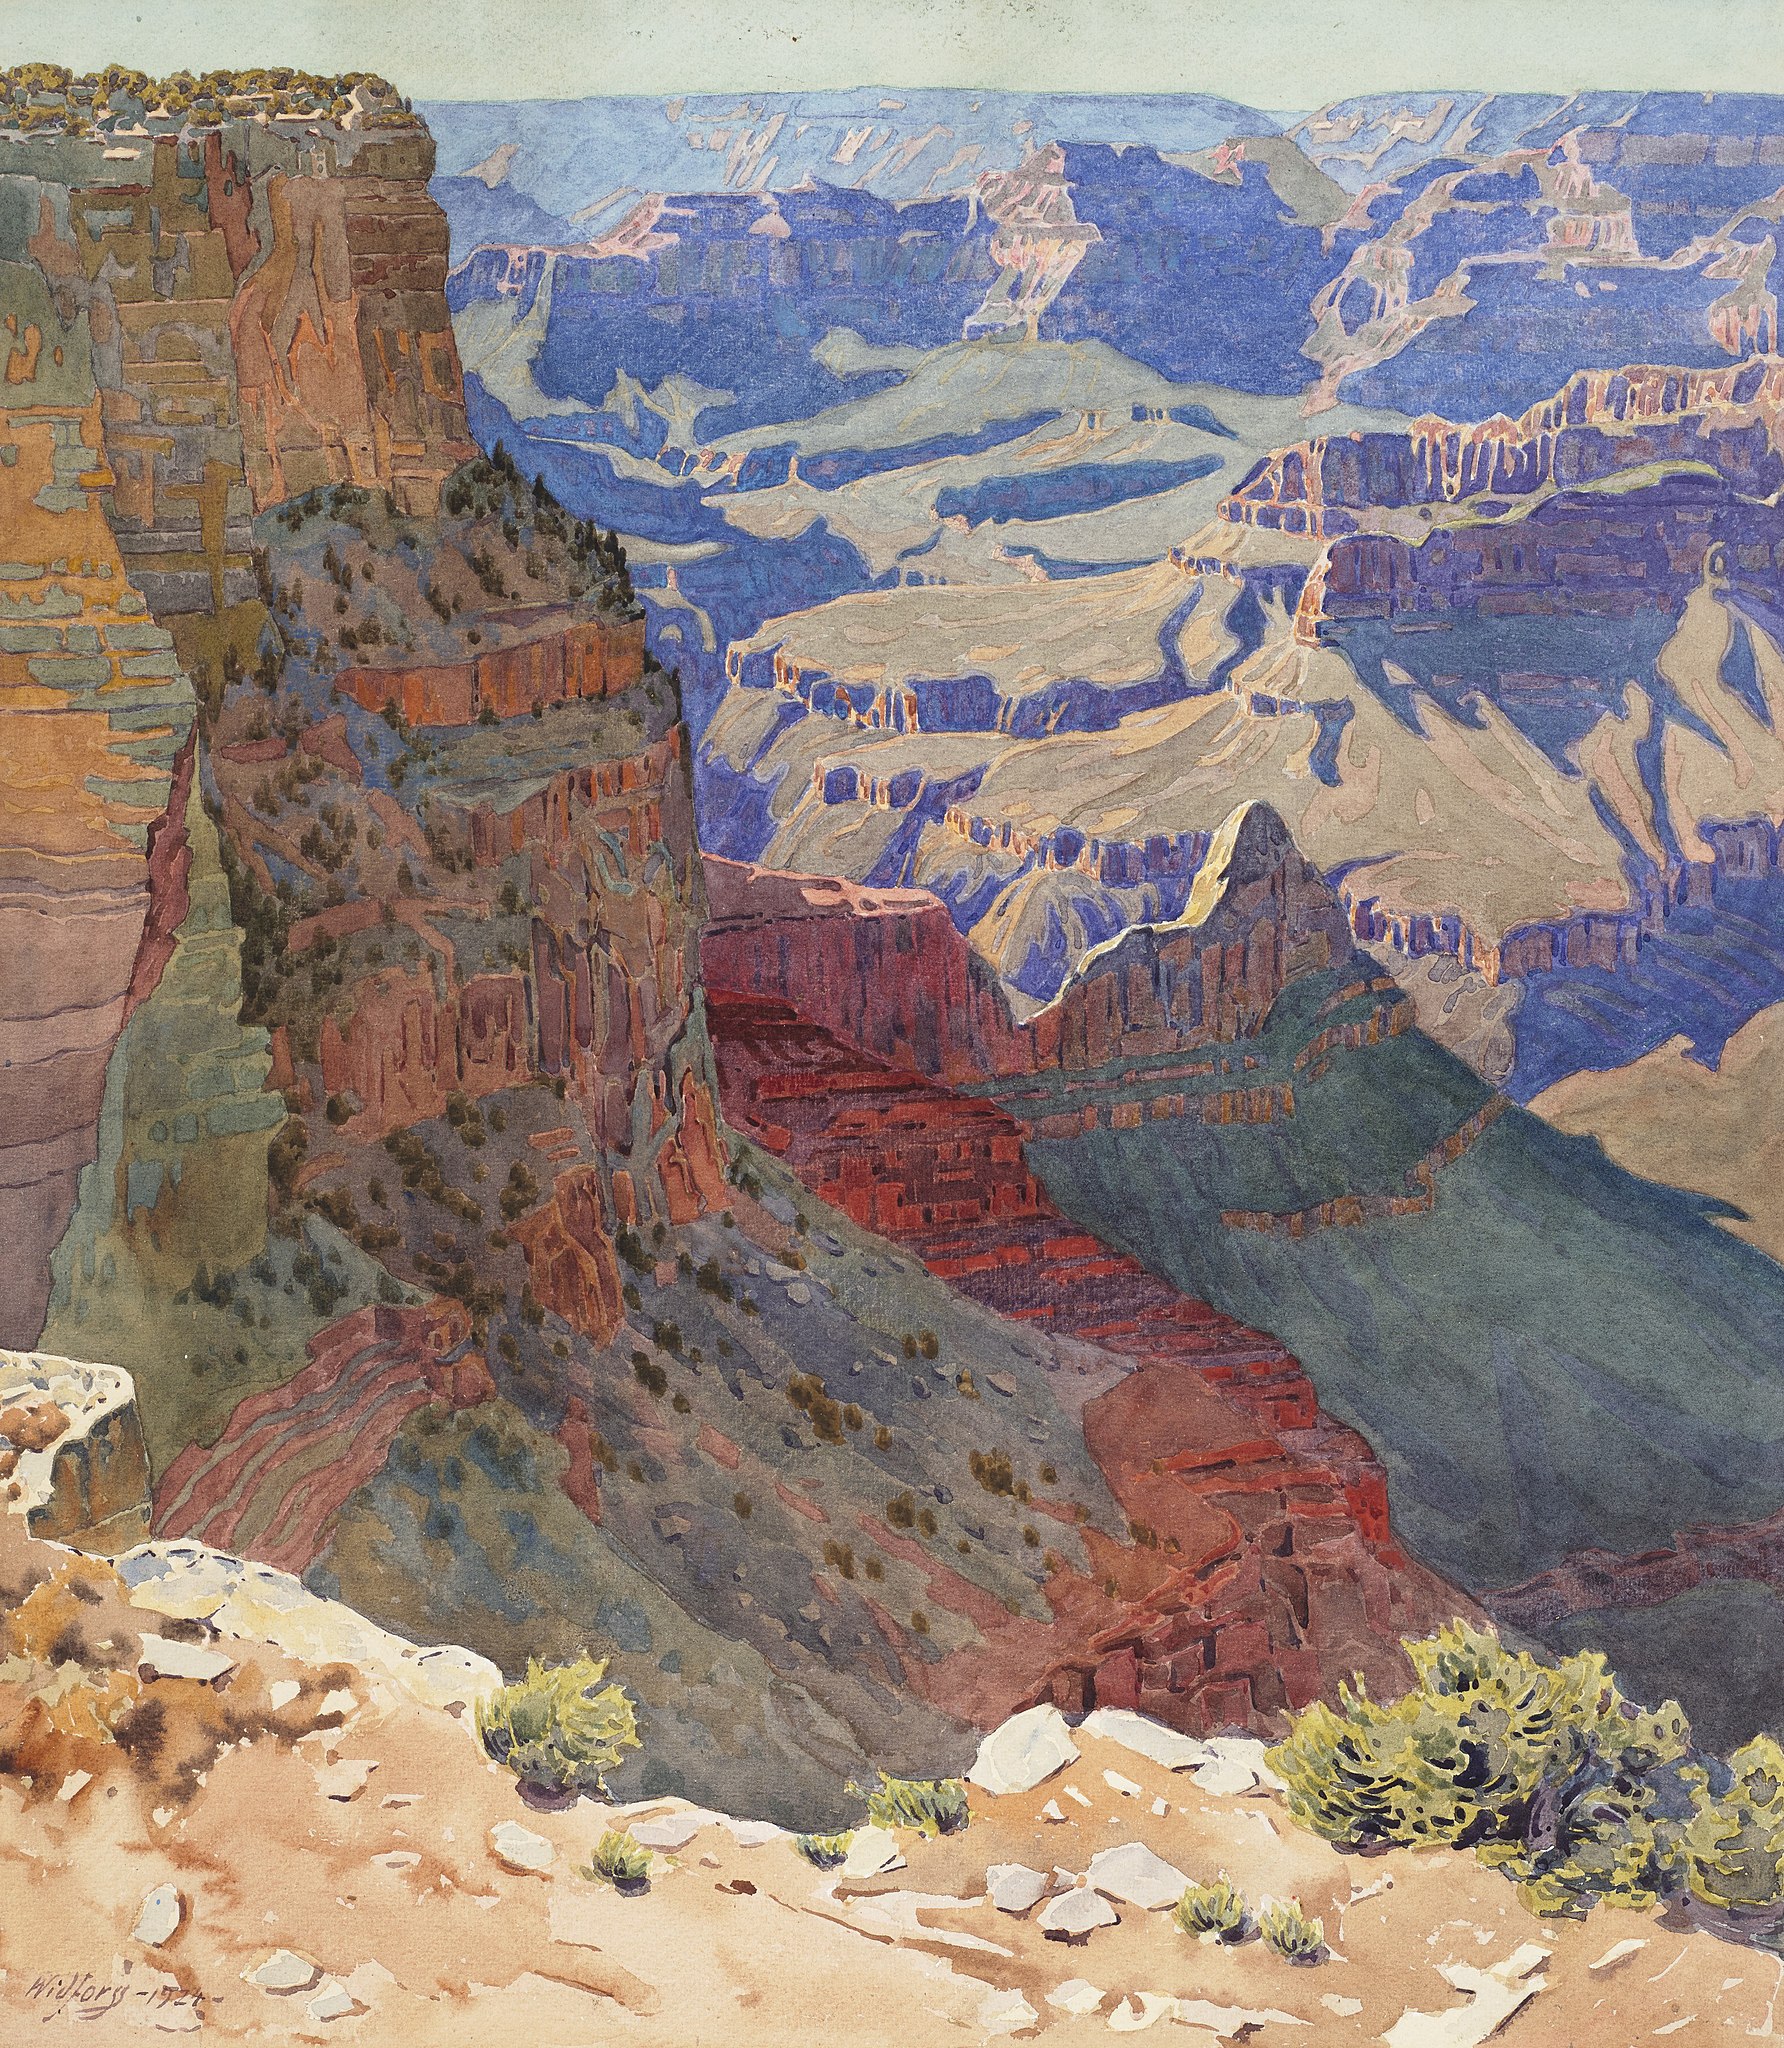 大峽谷 by Gunnar Widforss - 1920 年代末 - 50.8 x 44.5 釐米 